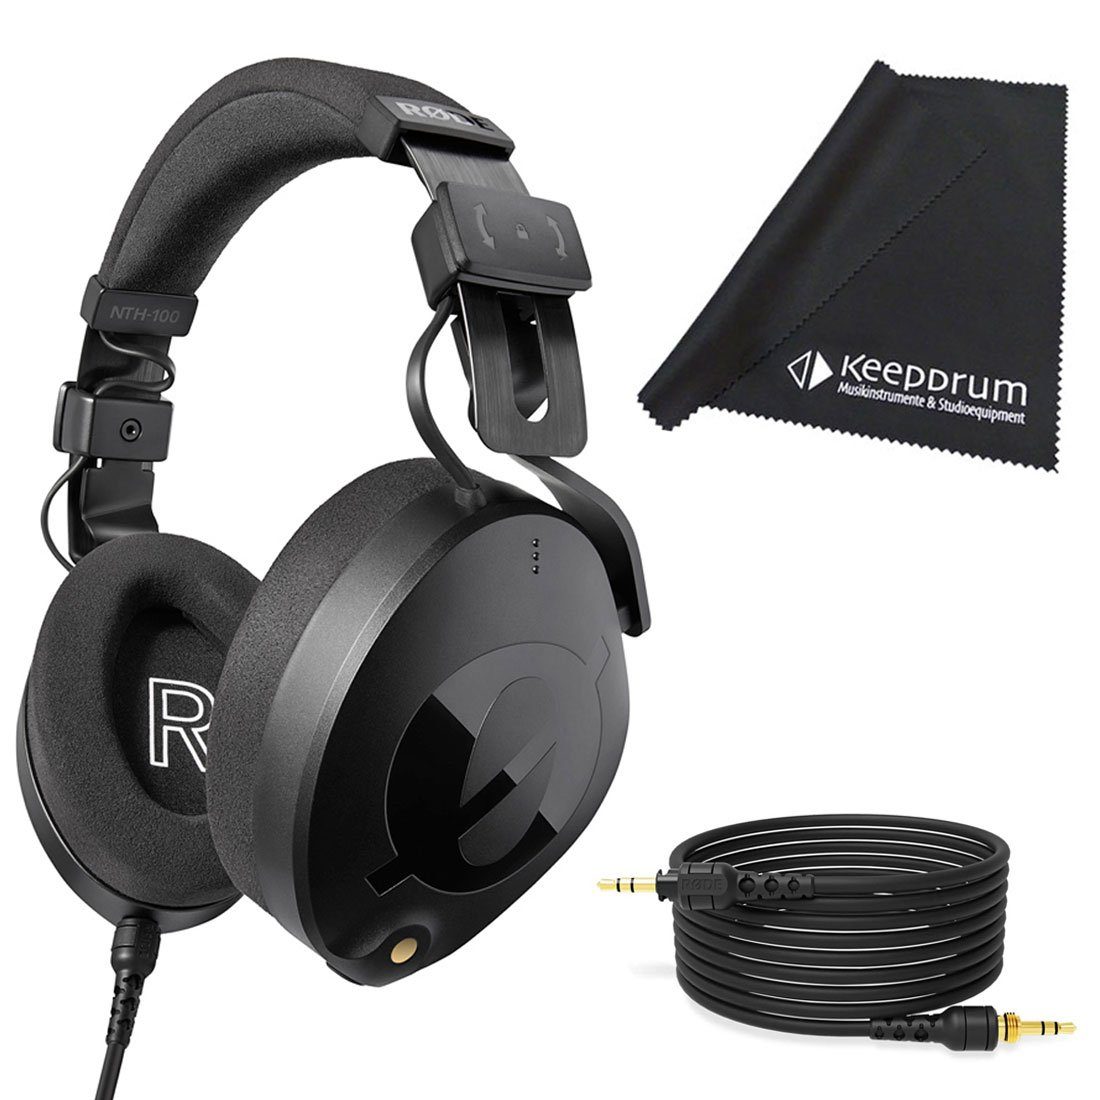 100 % Qualität RODE Microphones NTH-100 mit 2.4m mitTuch Tuch, (keepdrum passive Geräuschunterdrückung) Schwarz Kopfhörer Kabel